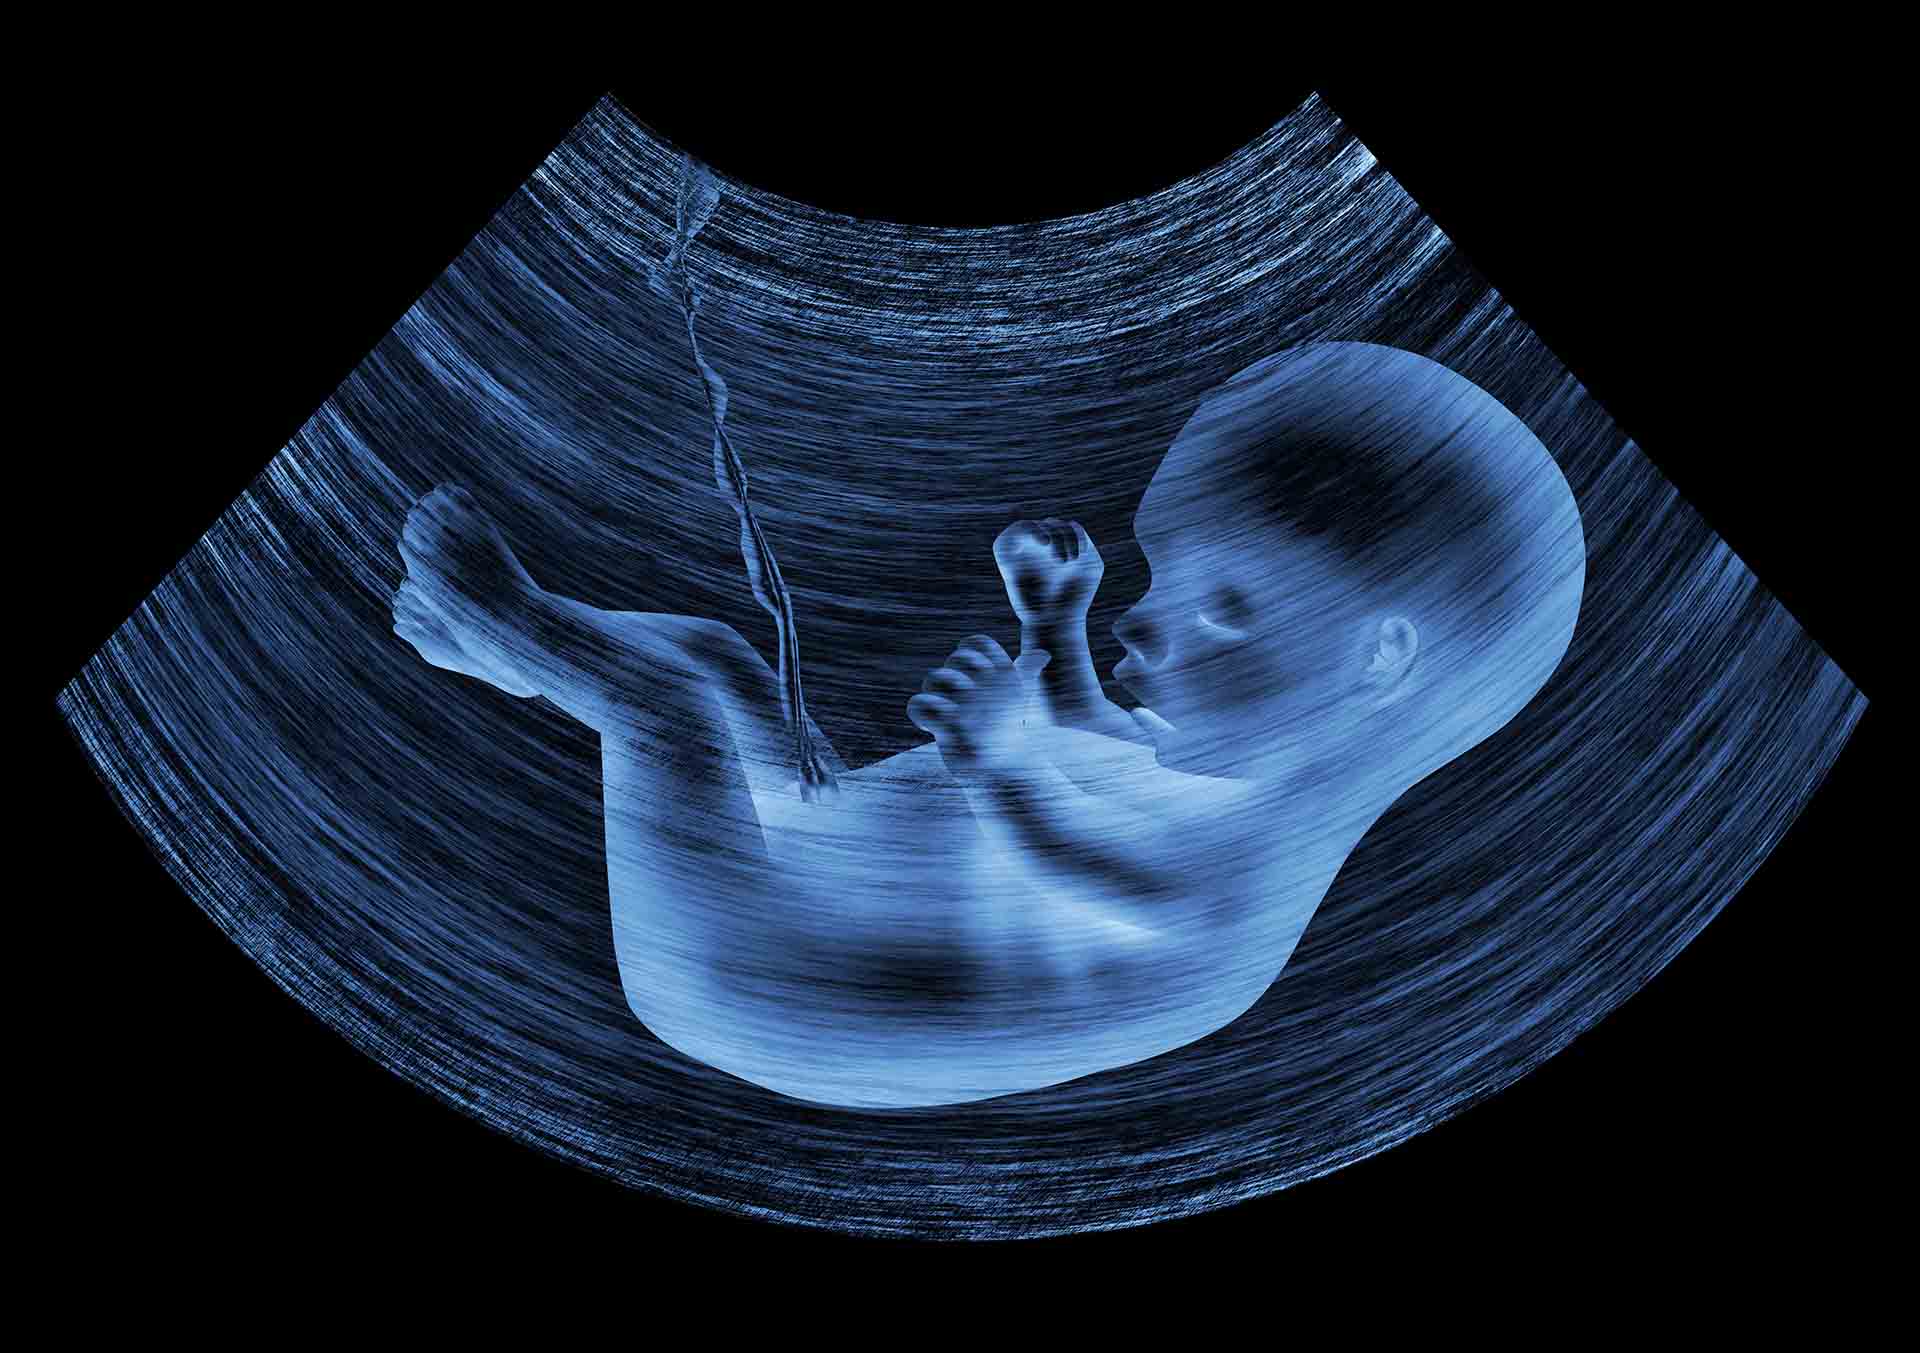 ecografia morfologica 3D permette di visualizzare in modo molto dettagliato il feto durante l'arco della gravidanza.